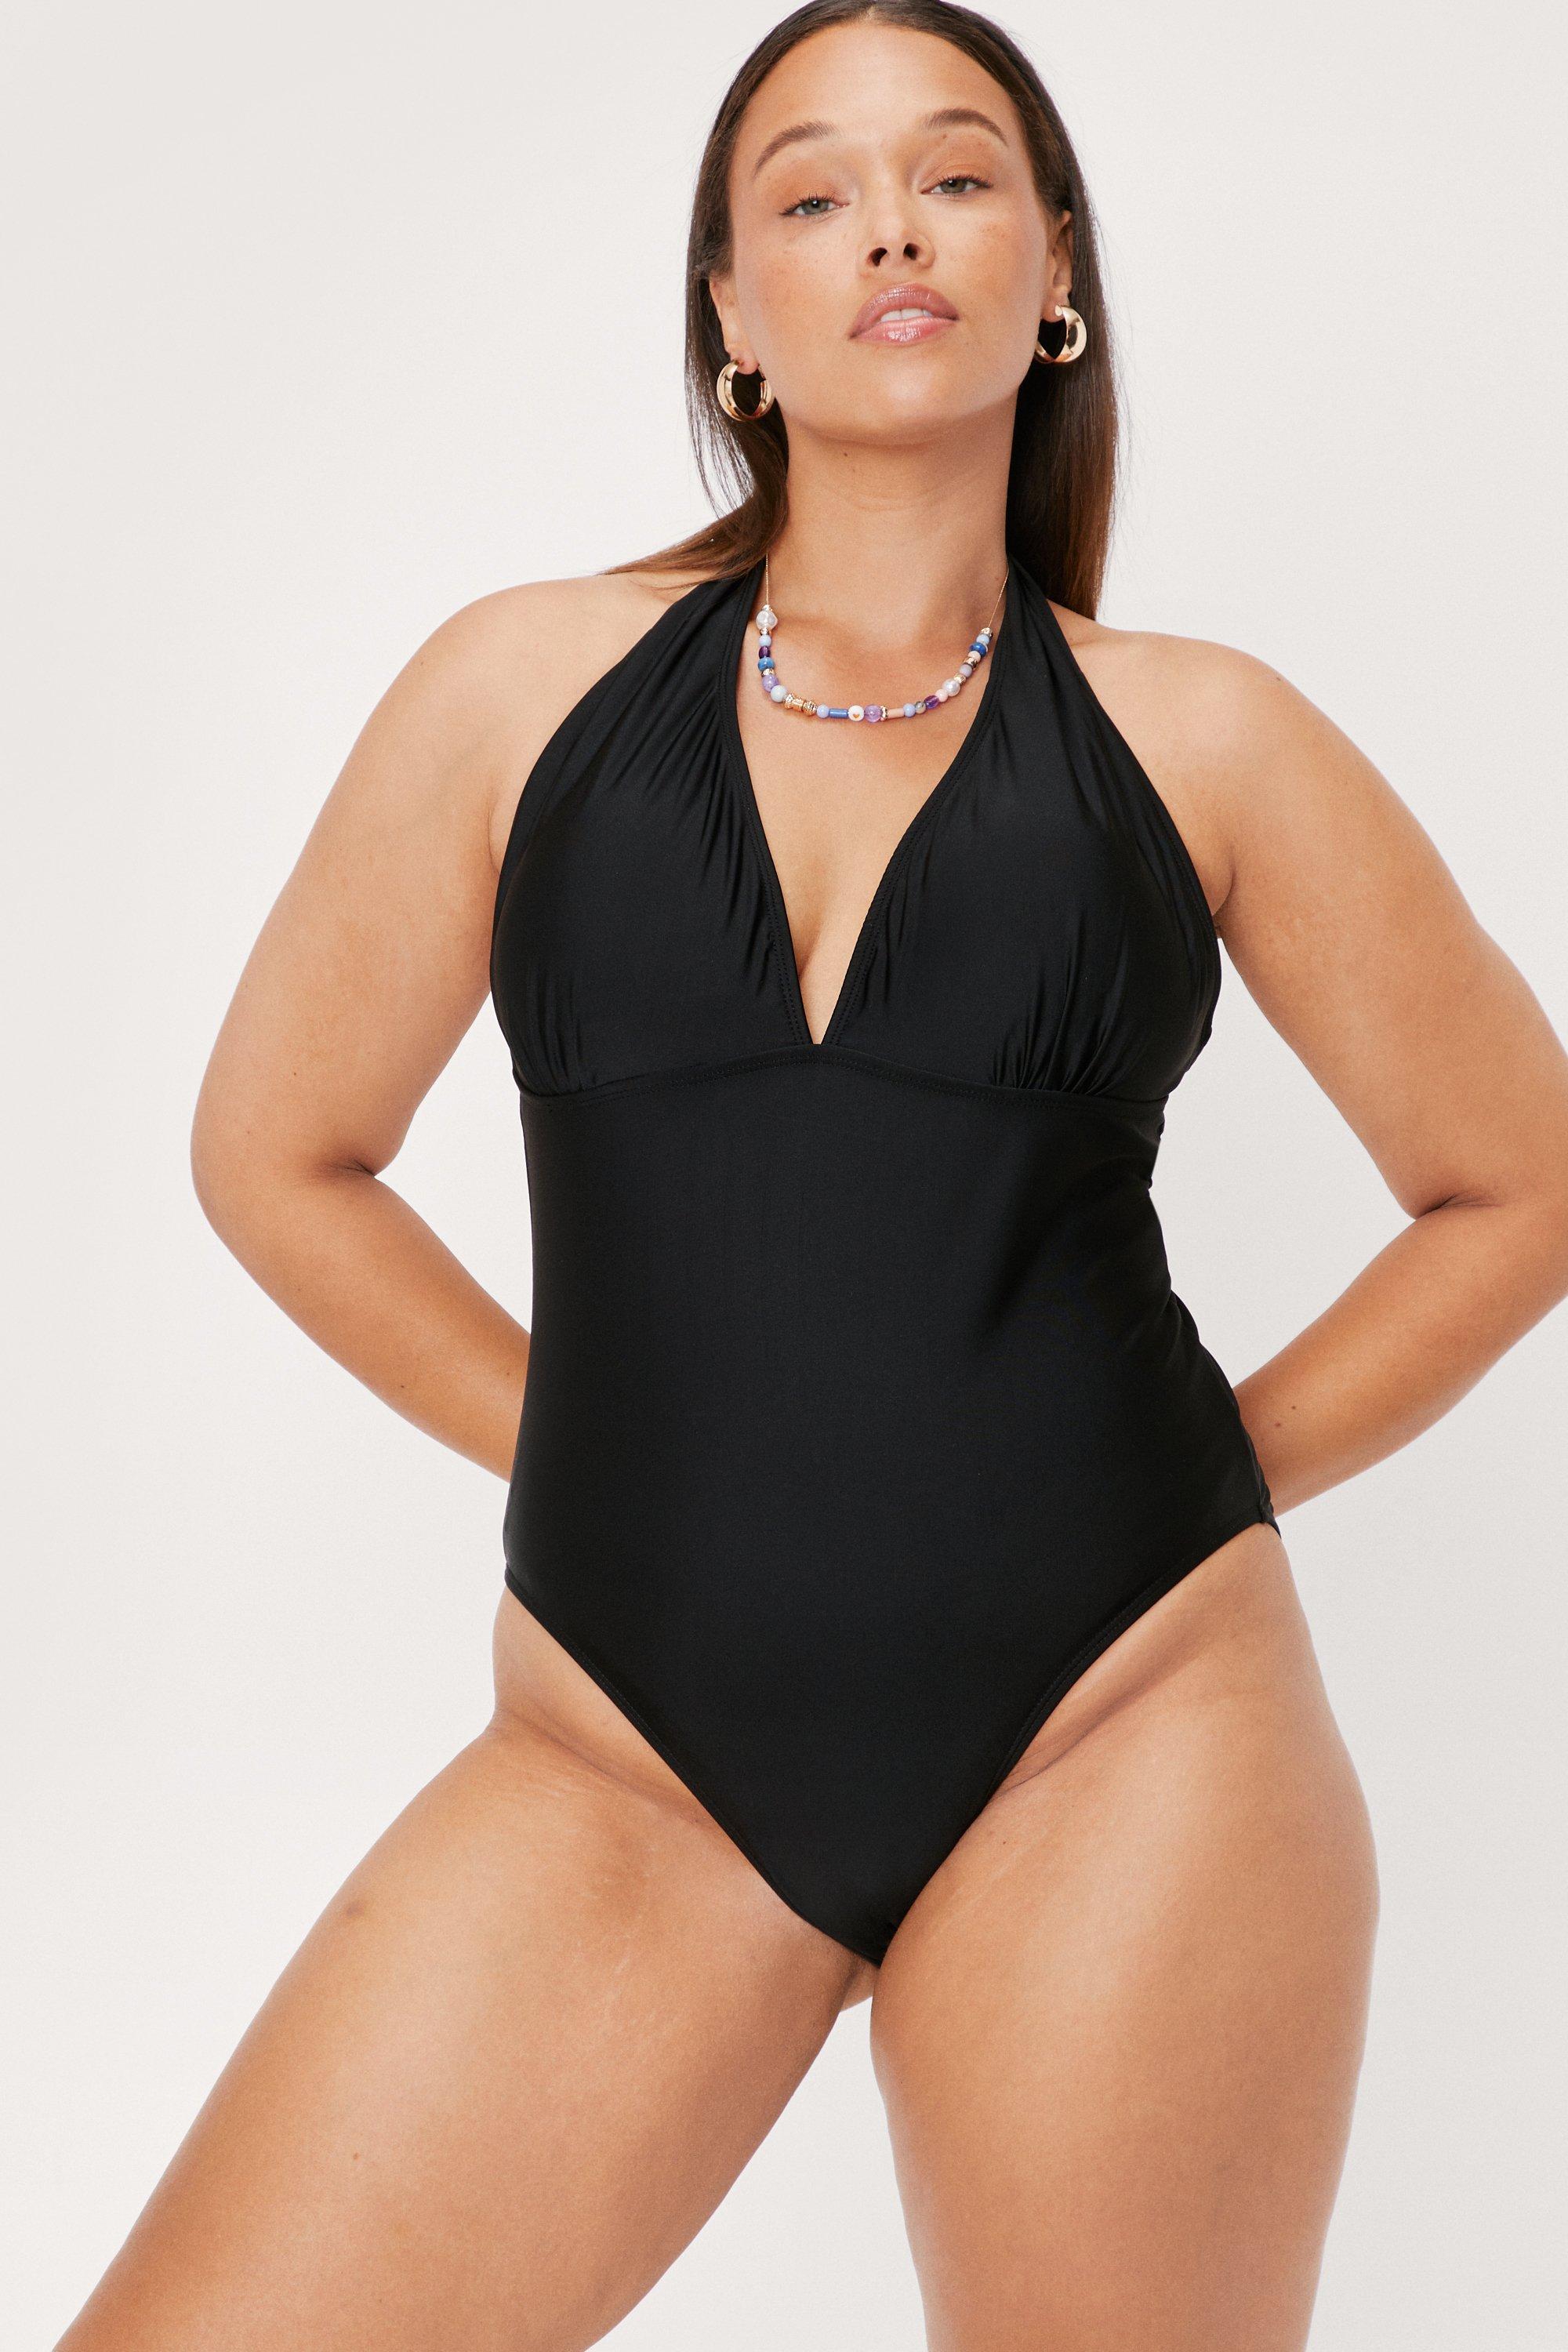 Tak for din hjælp form Rundt om Plus Size V Neck Halter Swimsuit | Nasty Gal